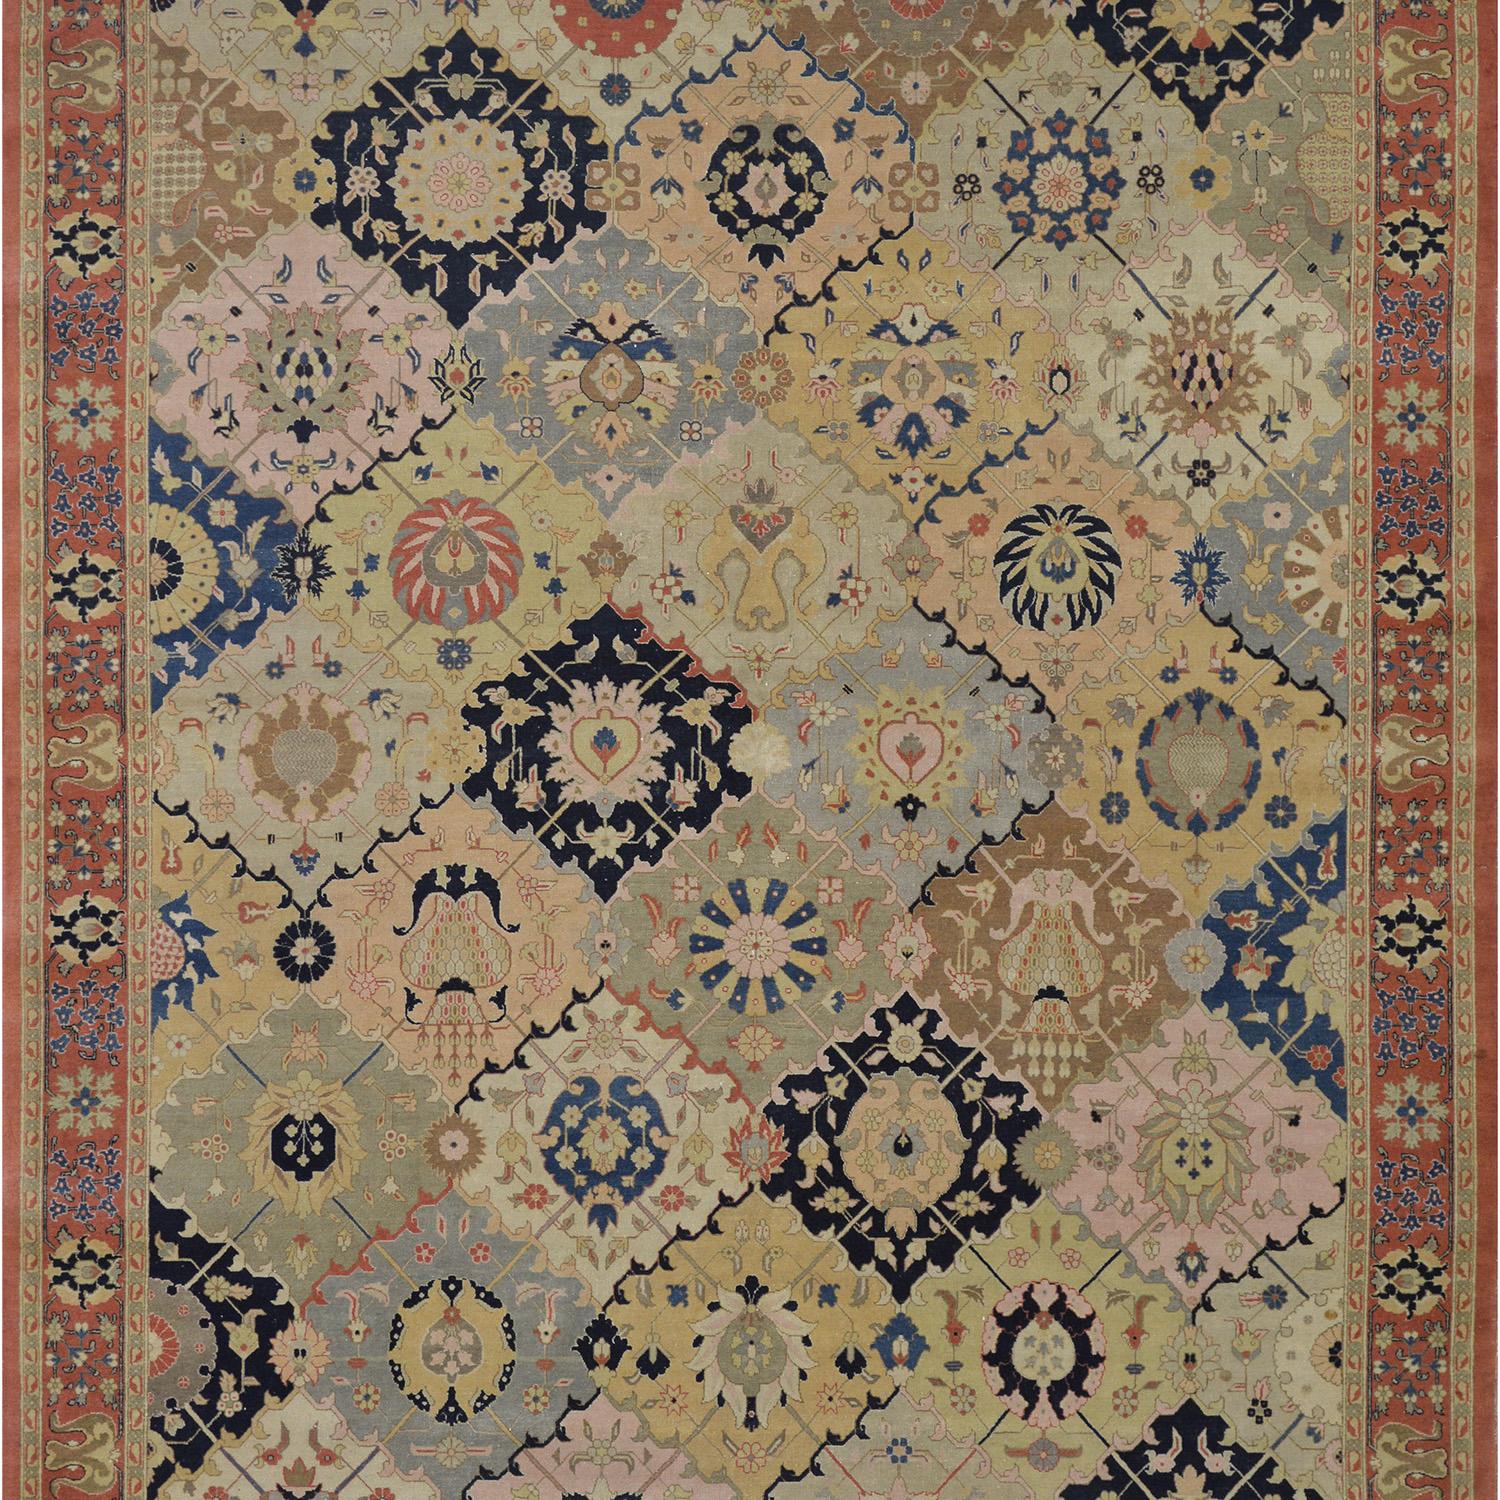 Dieser traditionelle handgewebte persische Täbriz-Teppich hat ein polychromes All-Over-Gartenmotiv mit arabeskenförmigen Rautengittern, die jeweils Kränze mit zentralen Palmetten einschließen, in einer rostroten Palmettenbordüre zwischen